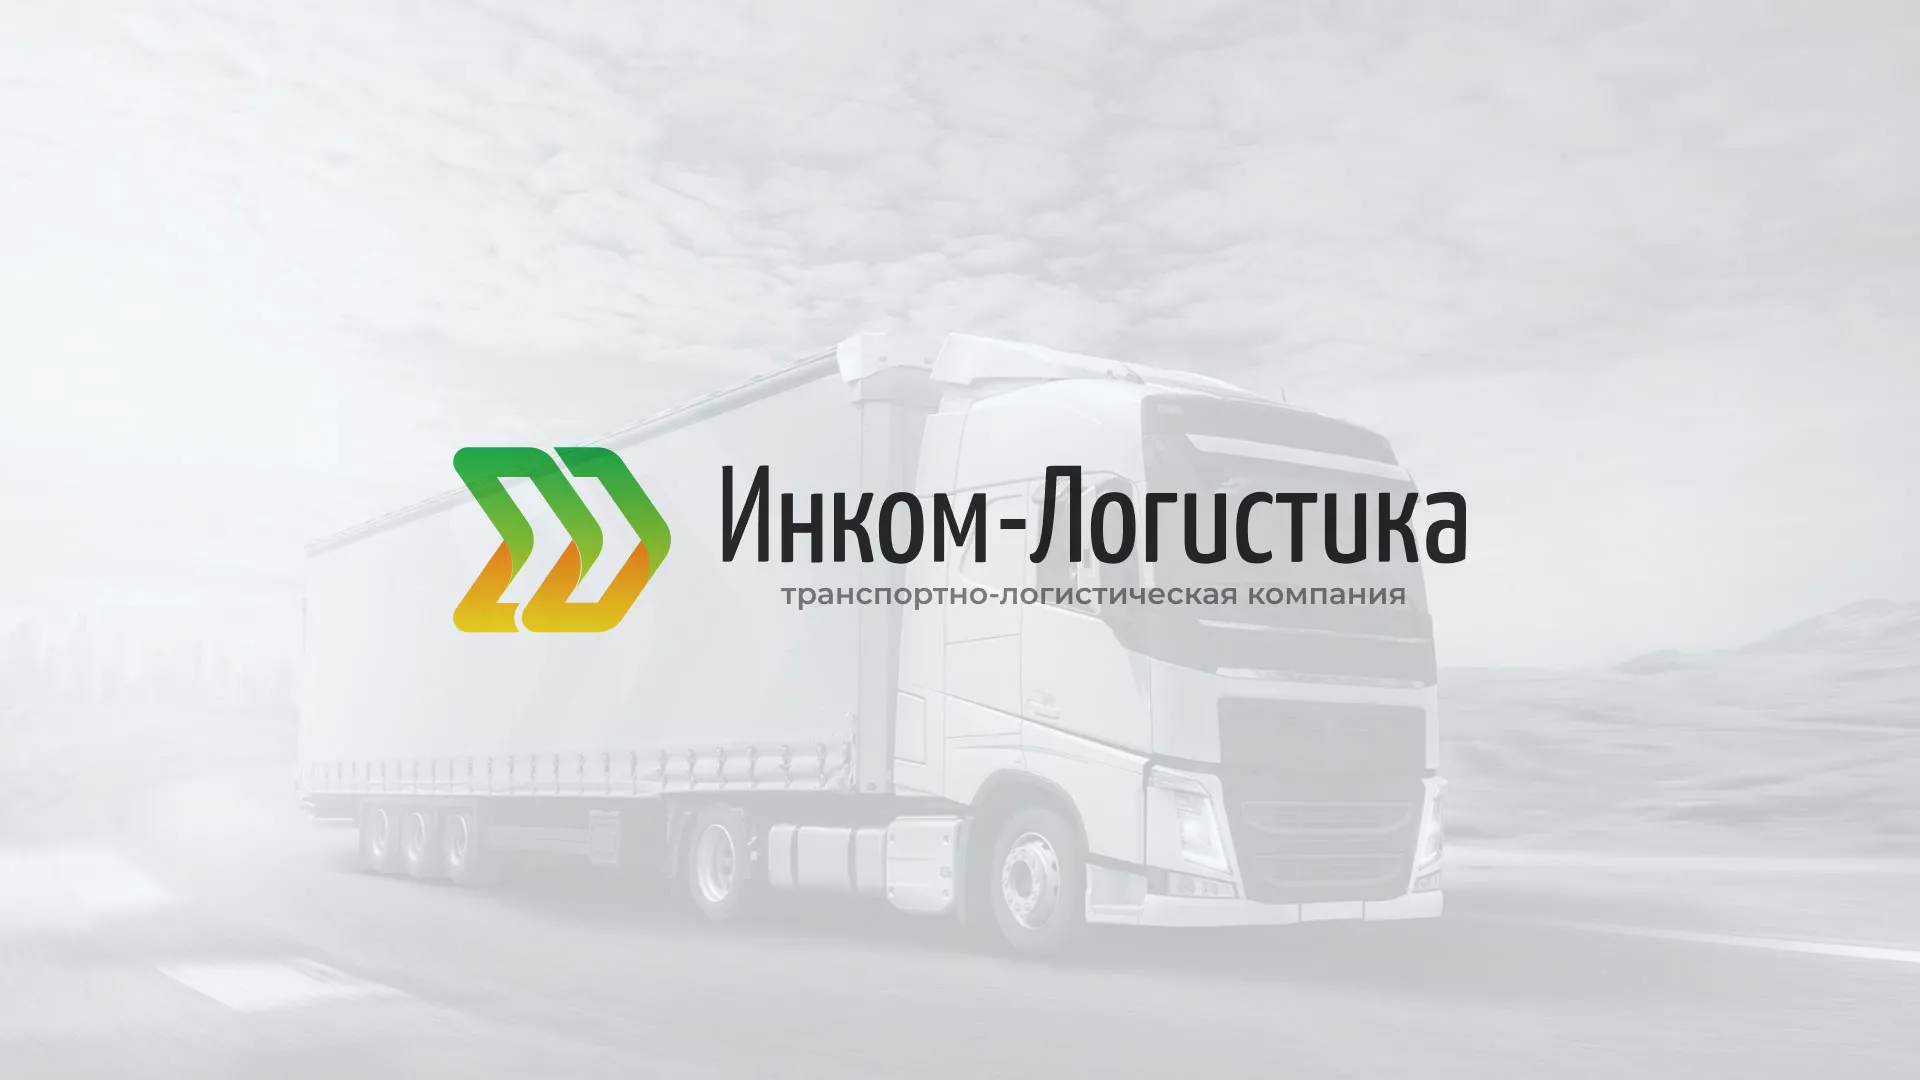 Разработка логотипа и сайта компании «Инком-Логистика» в Майском